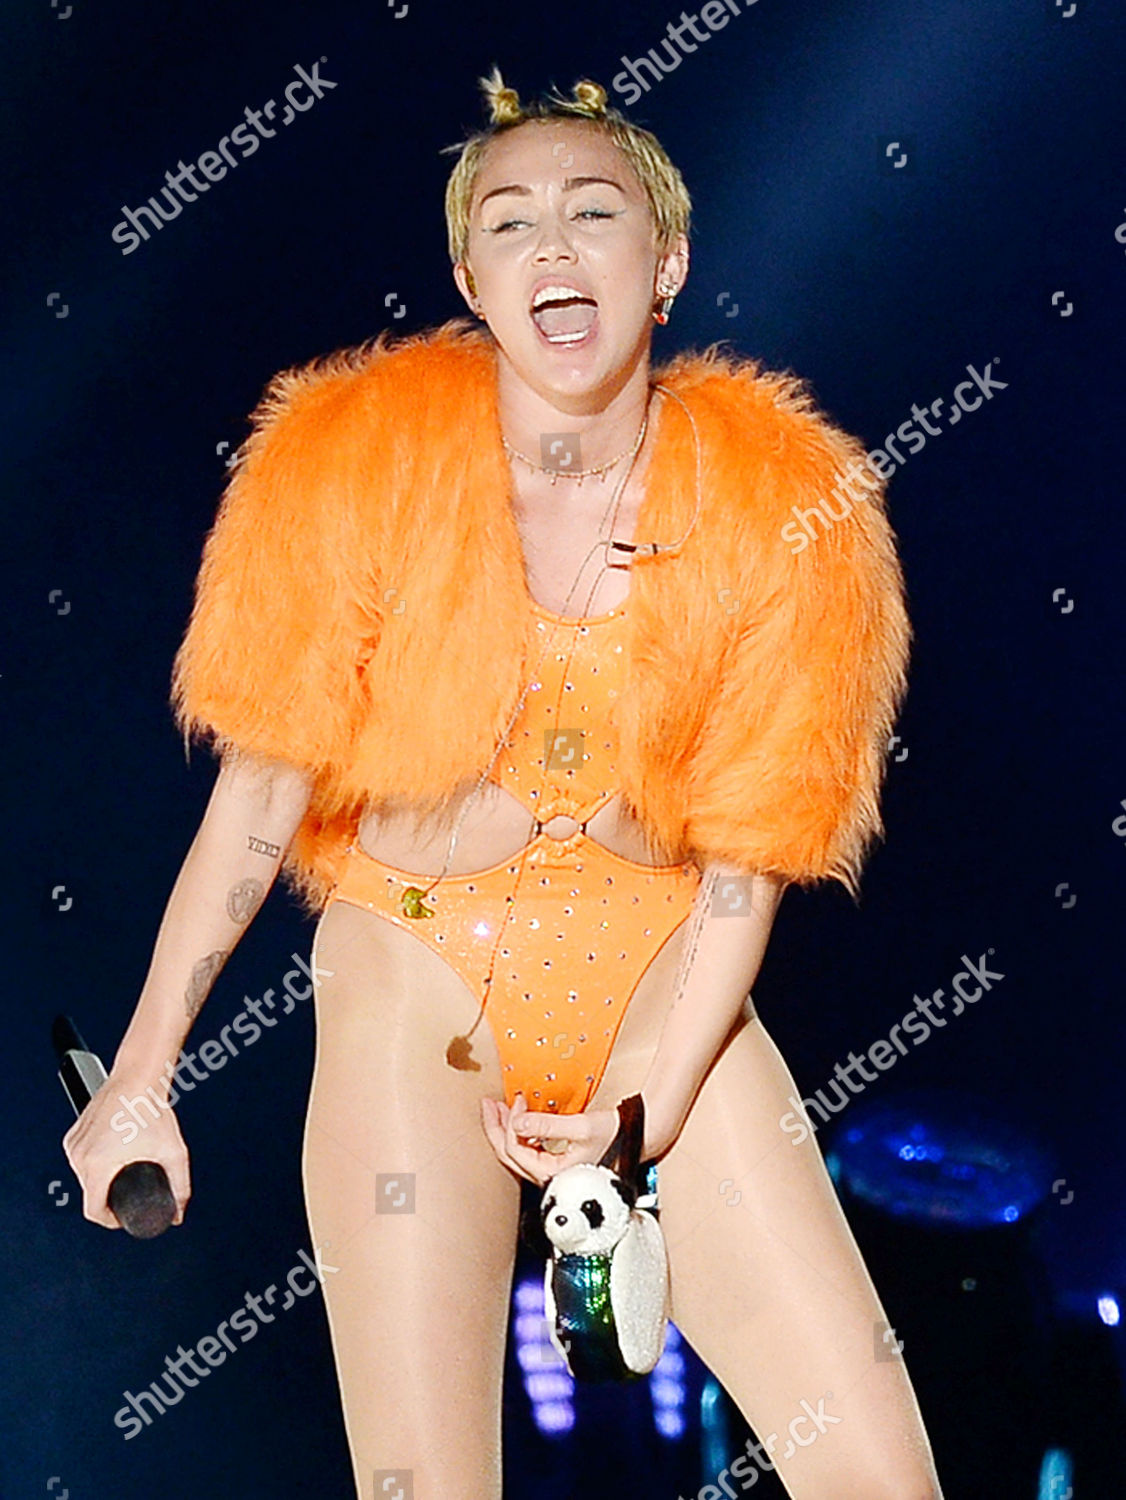 Miley Cyrus Concert.